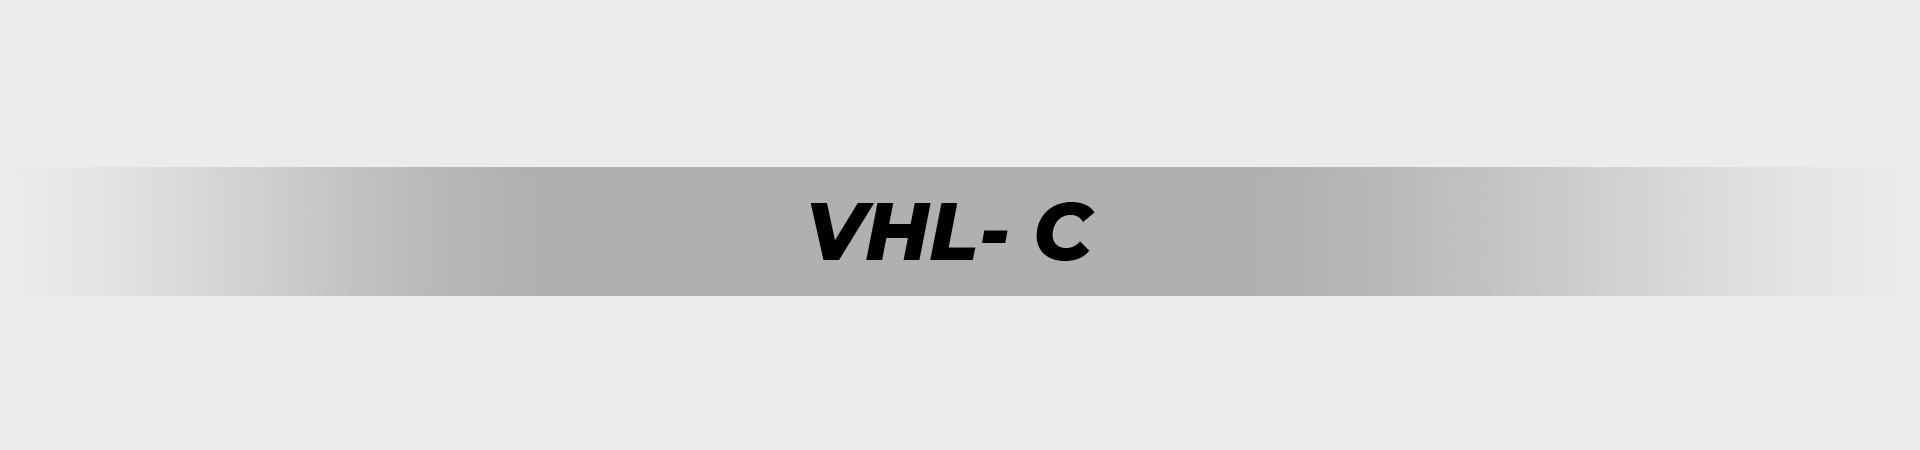 VHL- C_